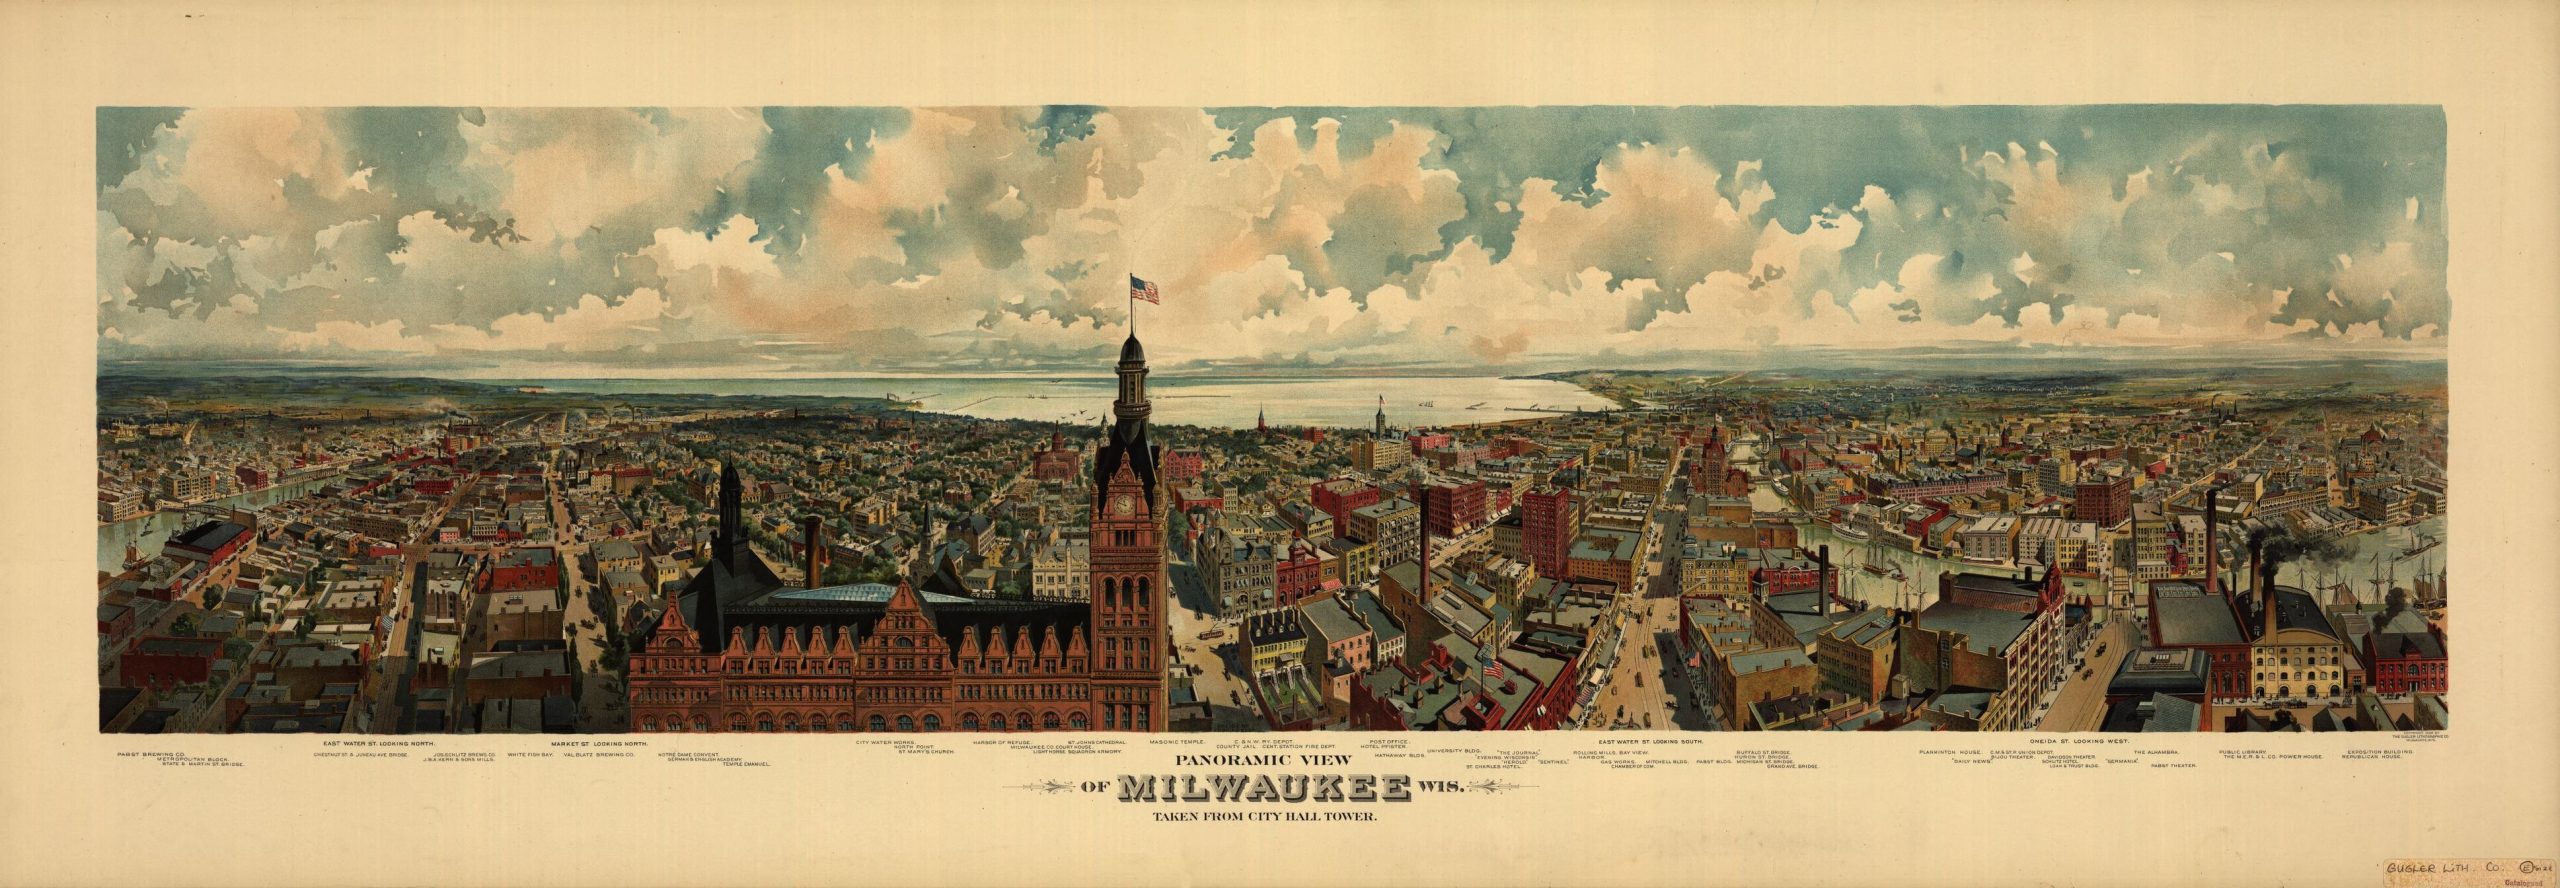 Panorama of Milwaukee, 1898